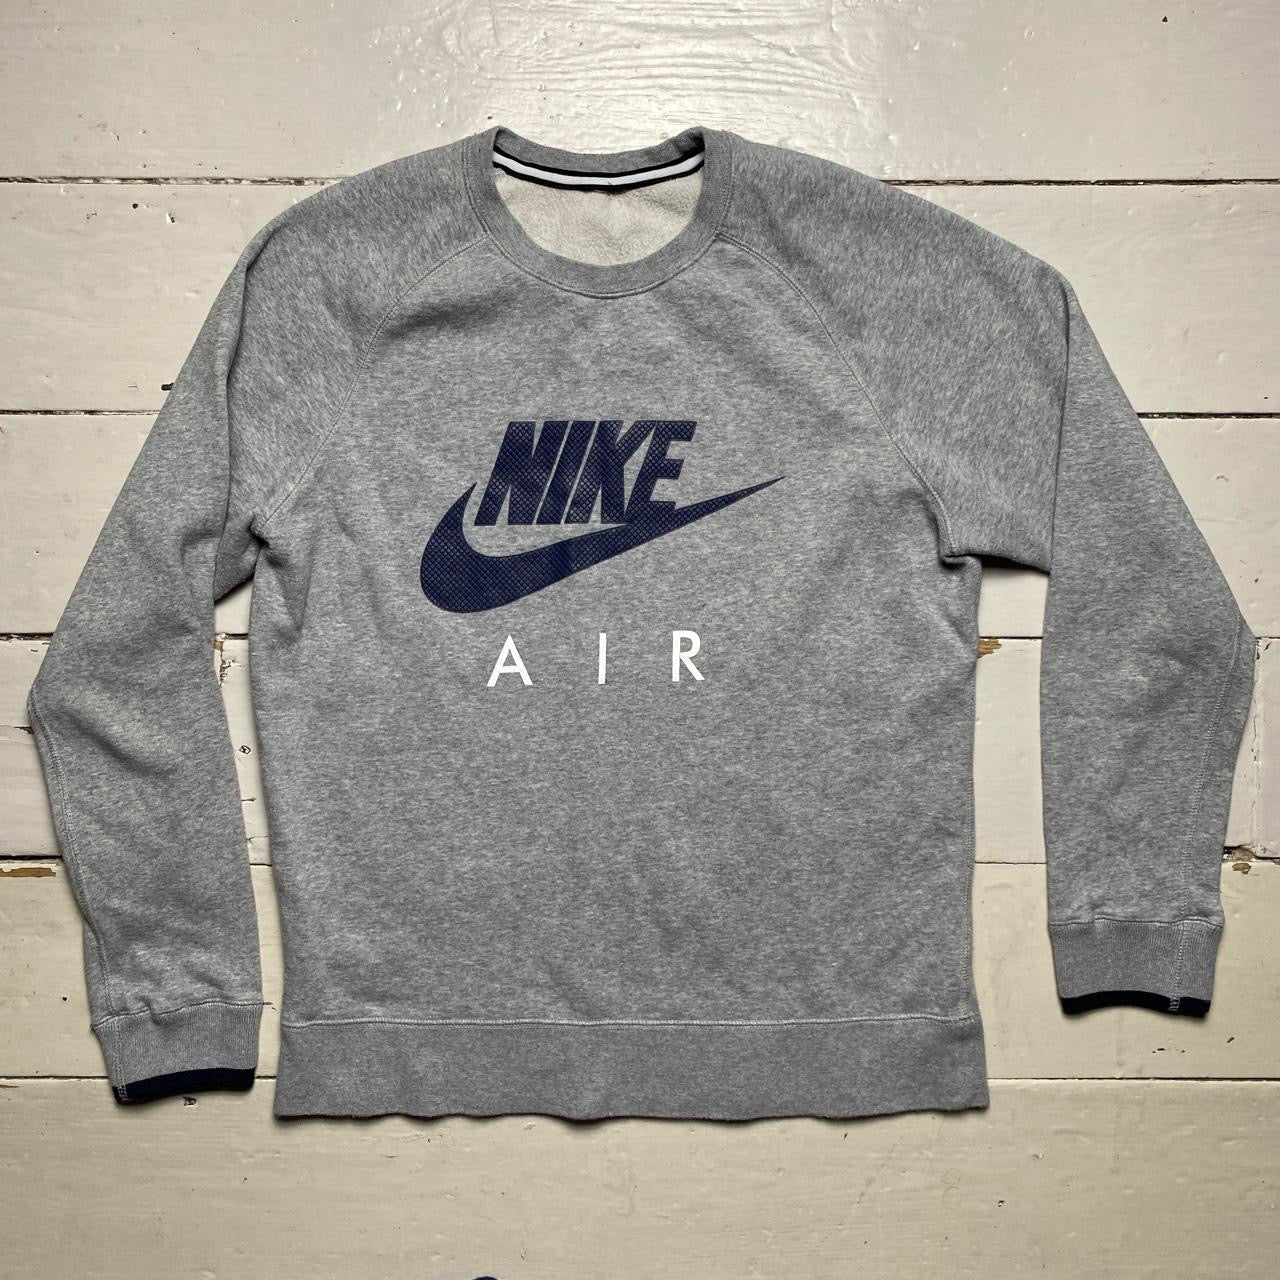 Nike Air Jumper Grey (Medium)